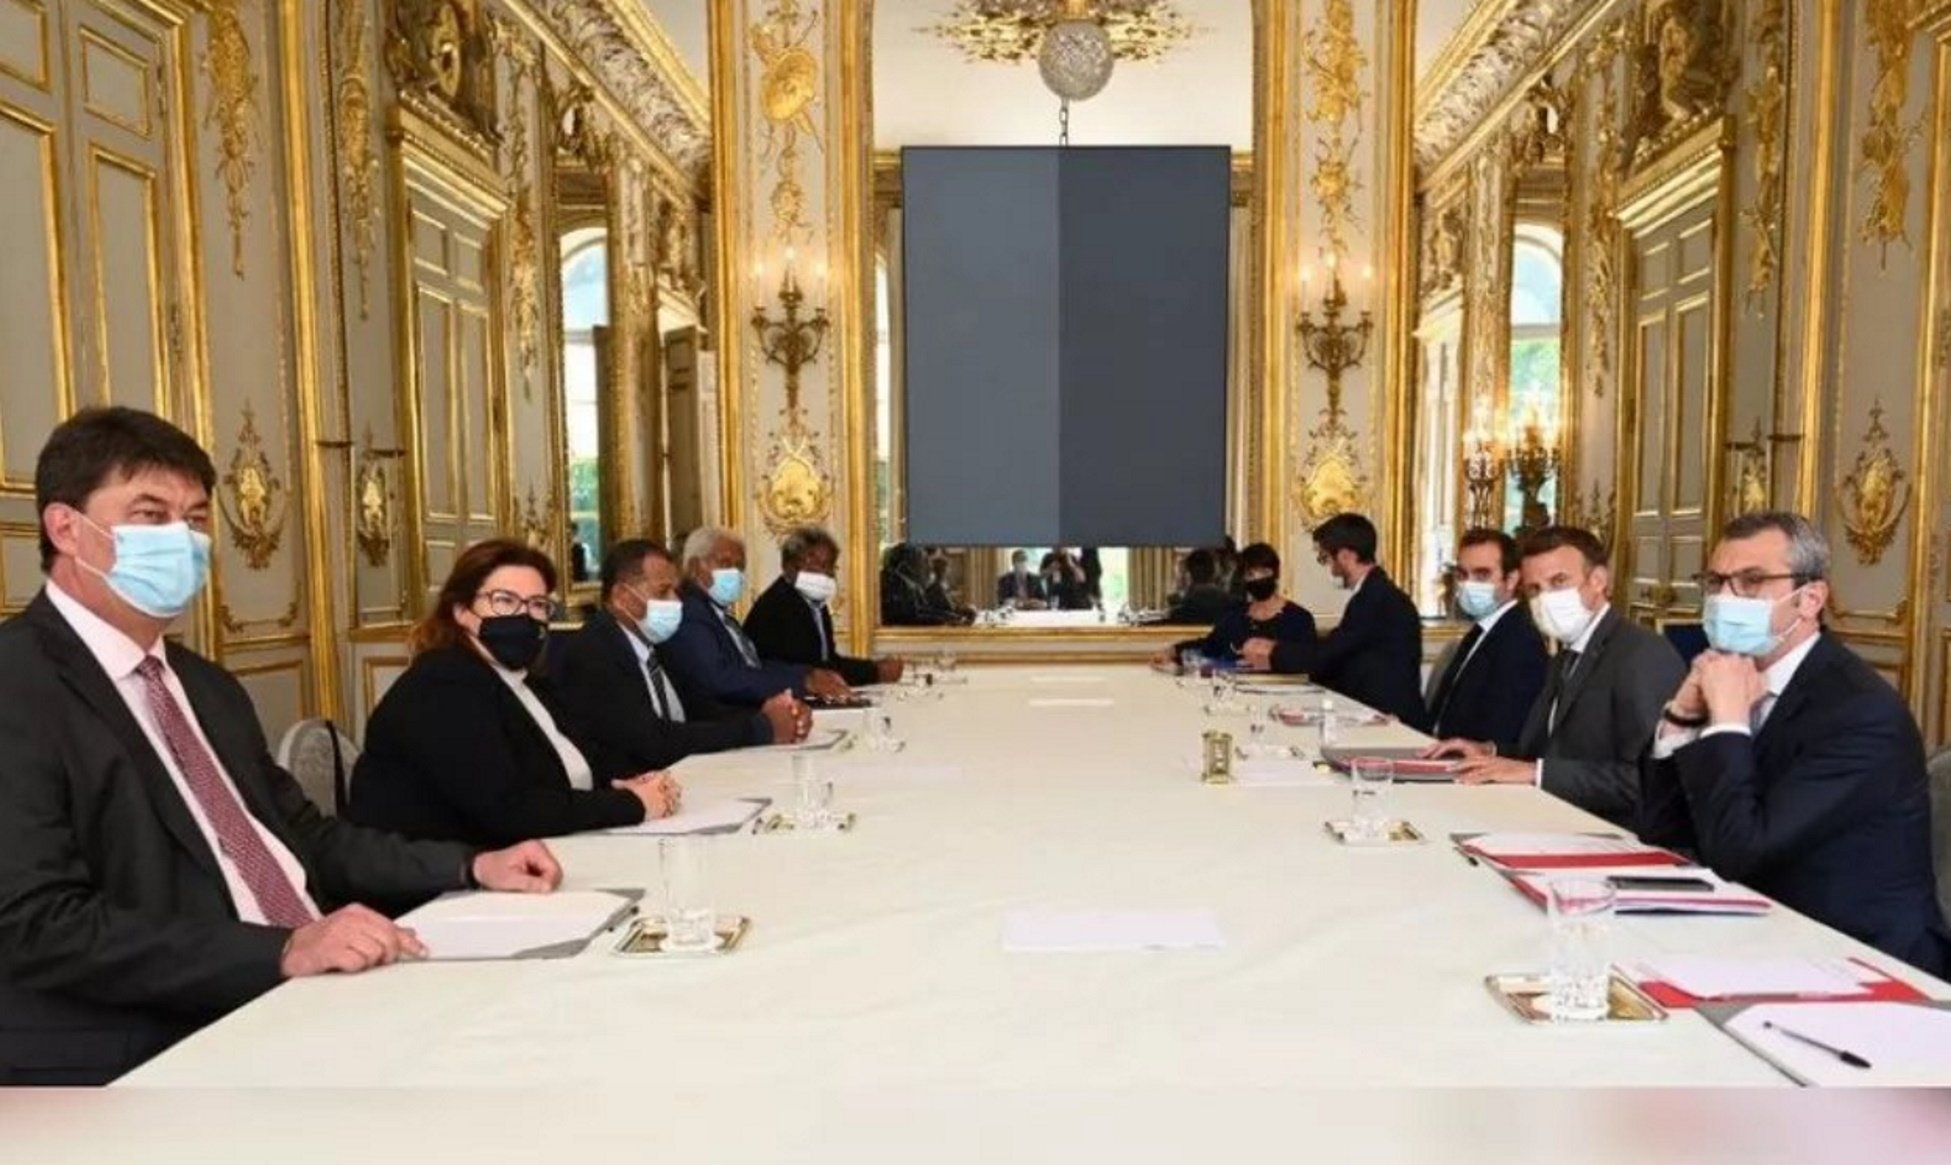 Així la taula de diàleg de Macron ha pactat un referèndum